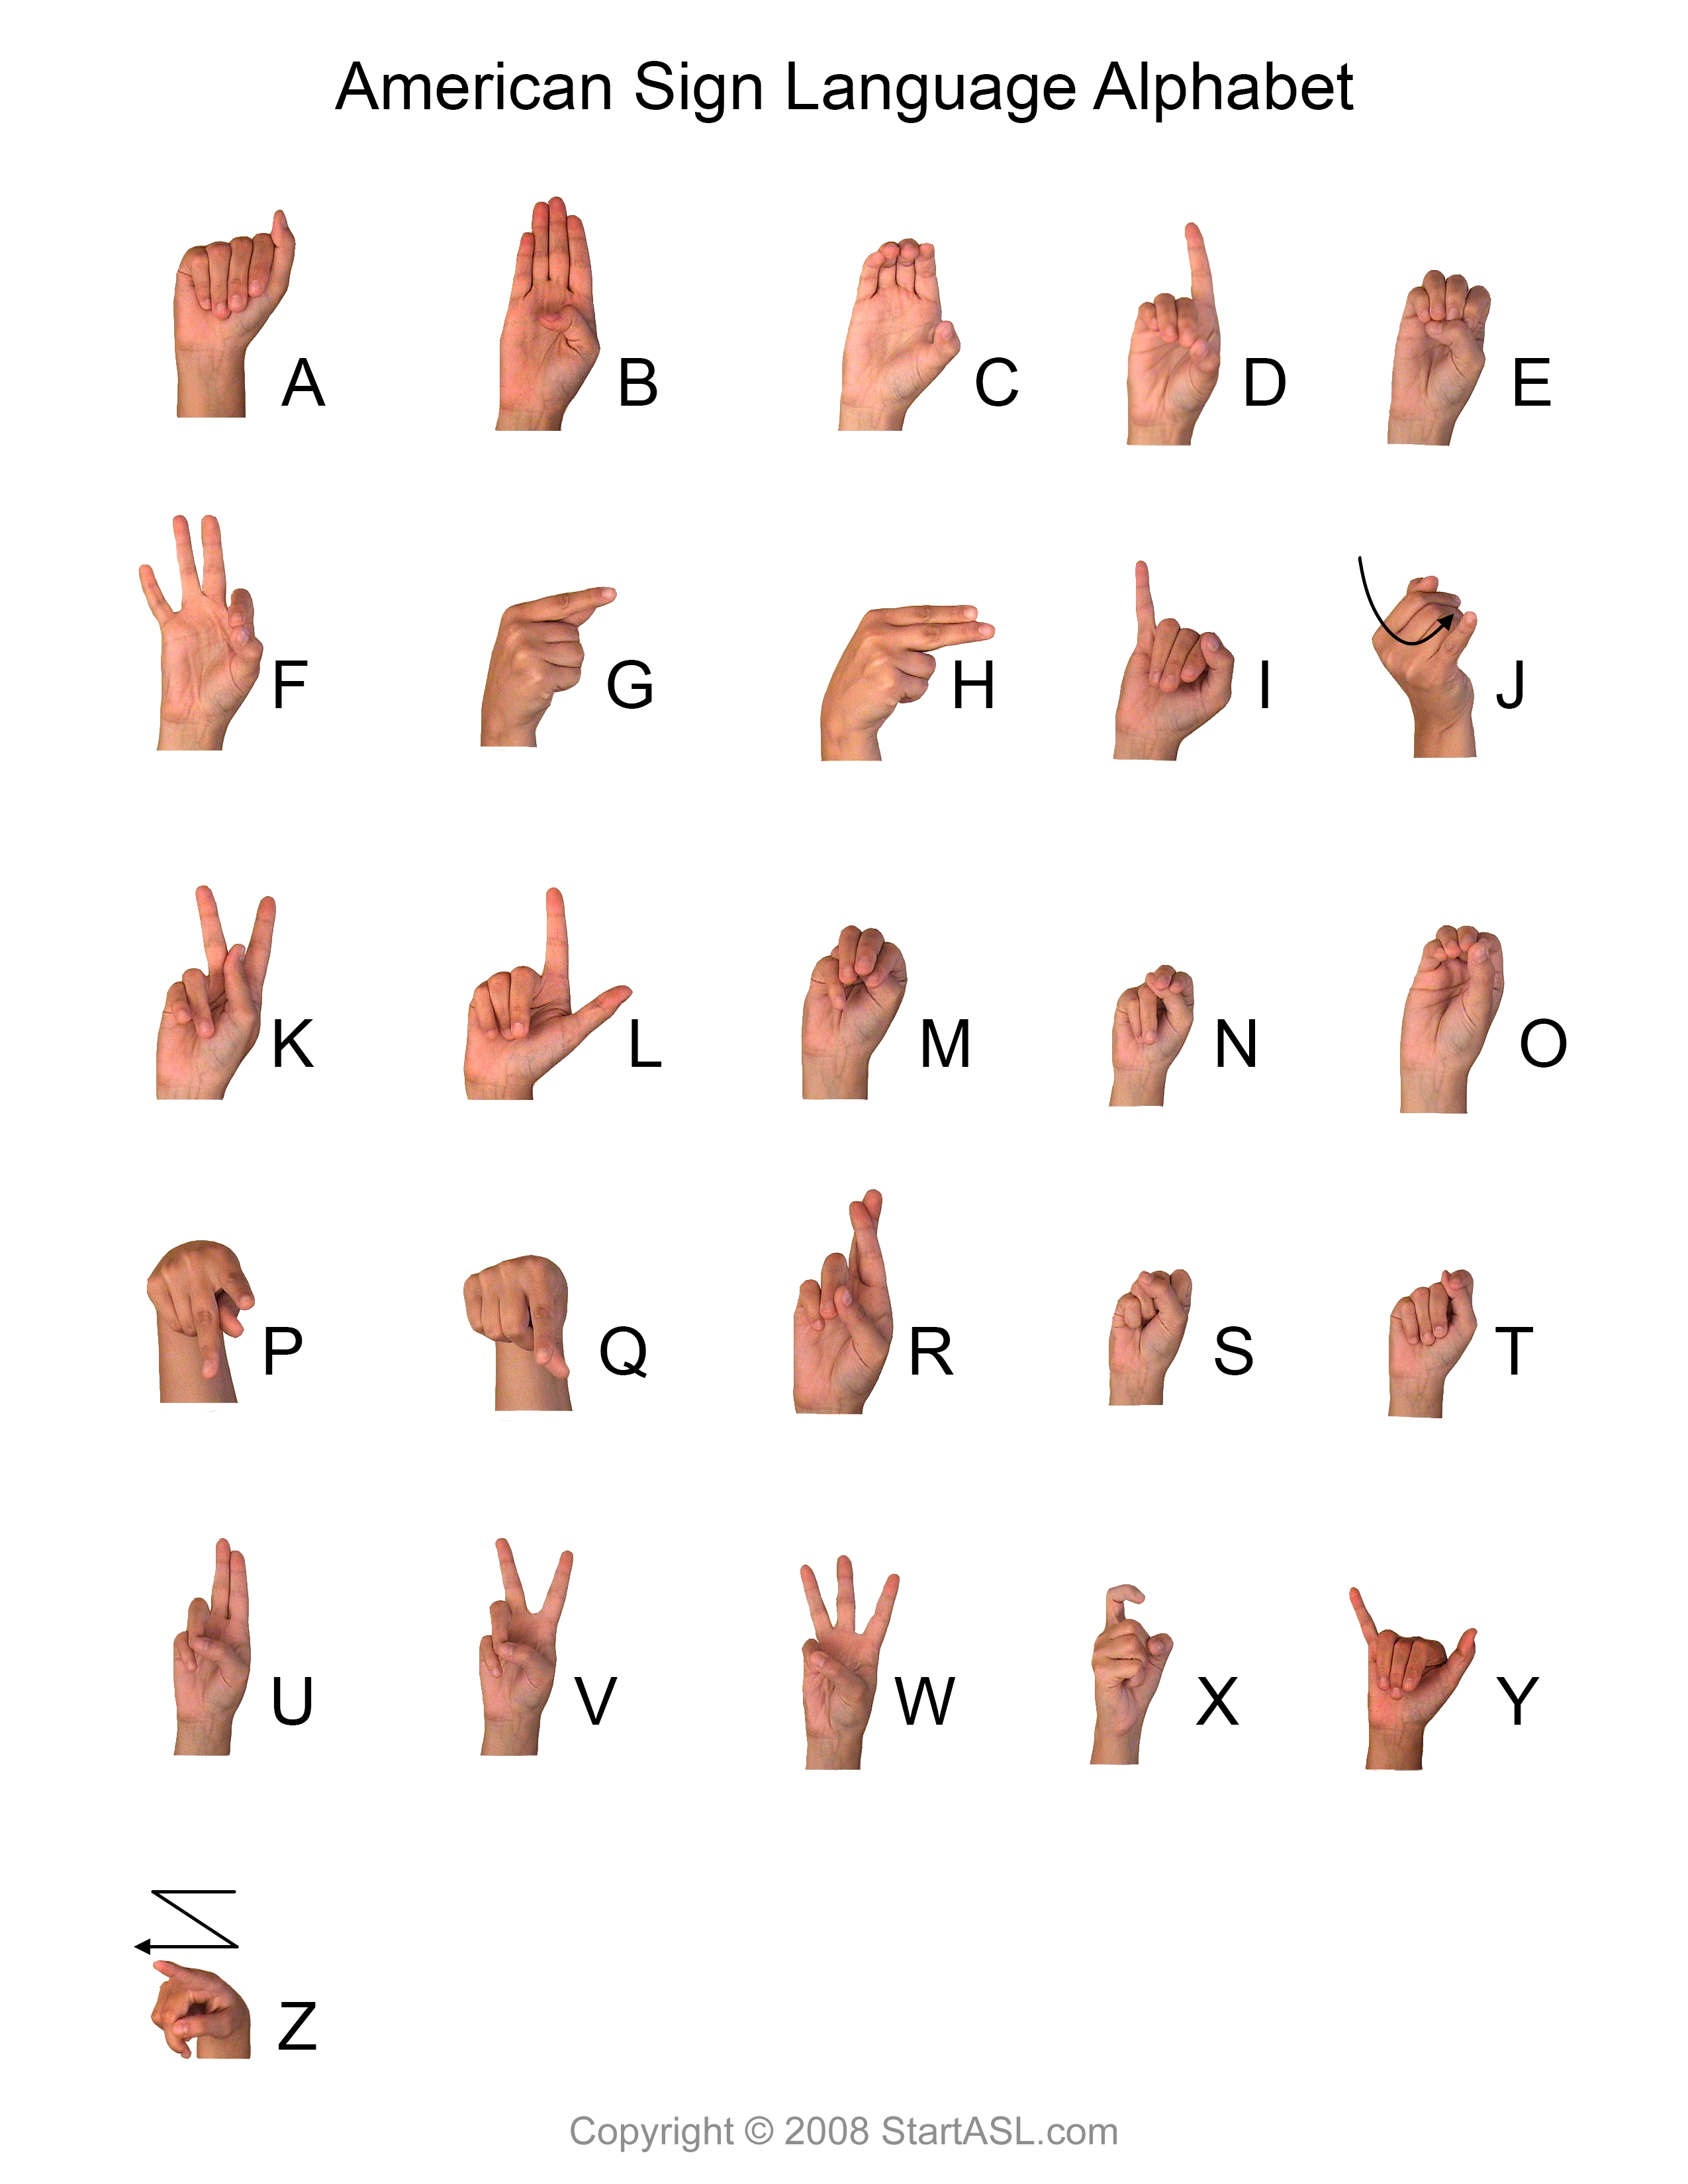 Lenguaje De Senas Sign Language Alphabet Sign Language Sign Images